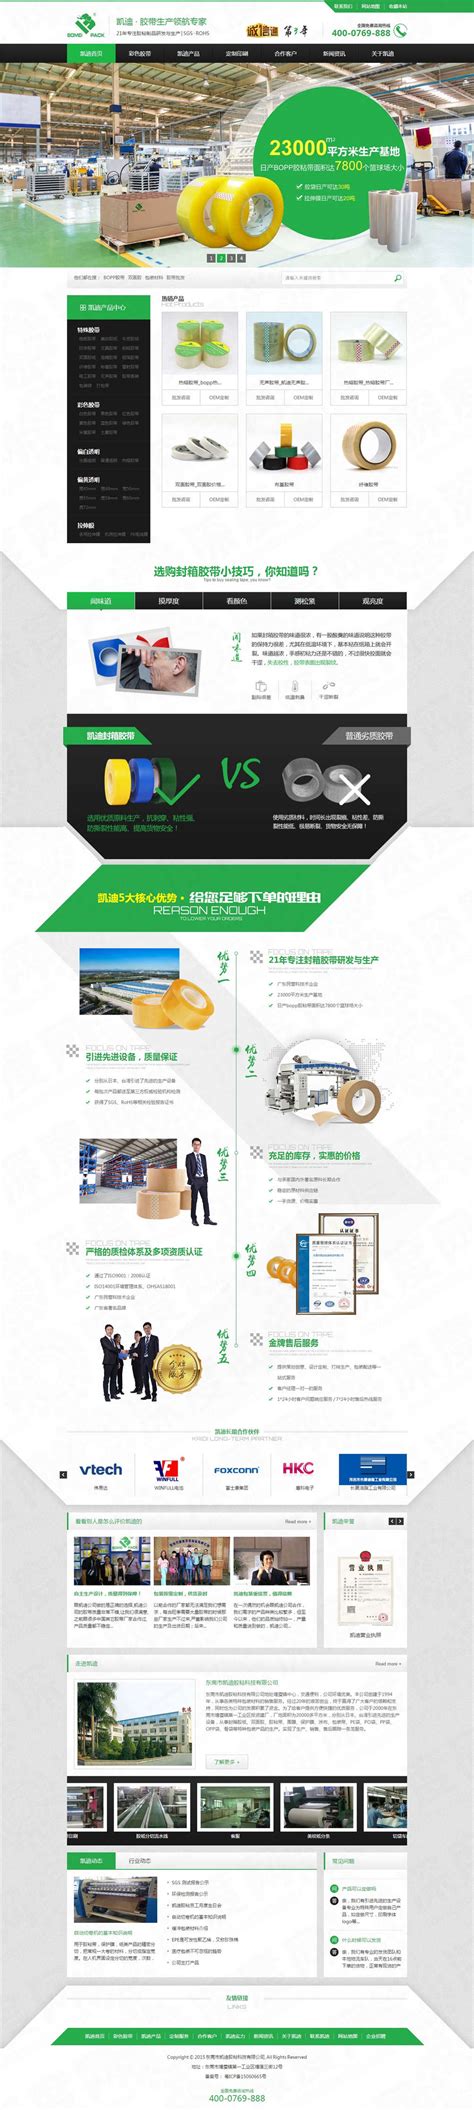 东莞市凯迪胶带营销型网站建设案例|印刷/包装/广告|深度网